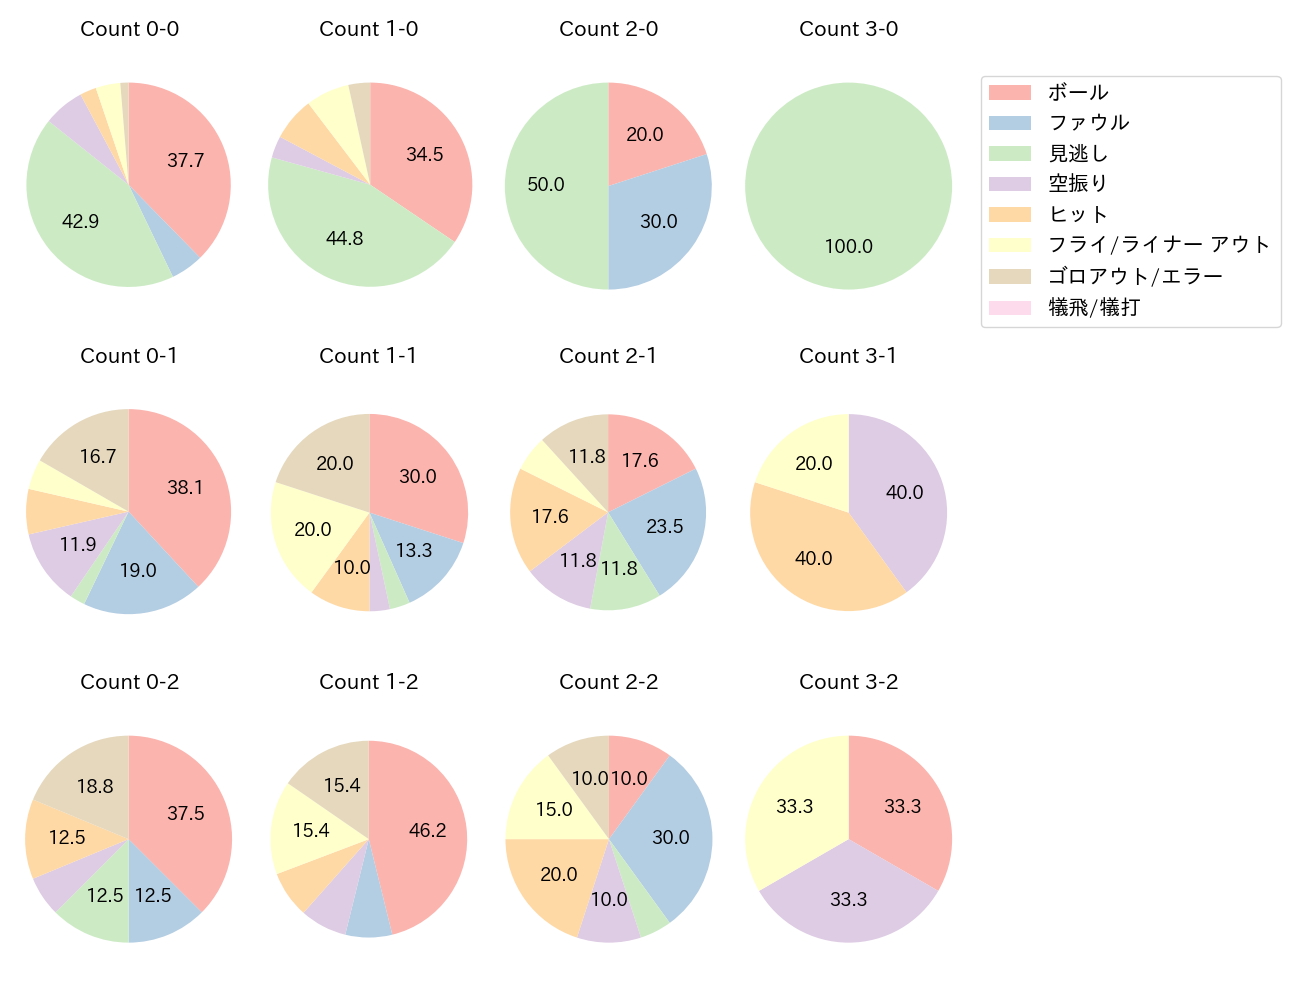 中川 圭太の球数分布(2023年7月)